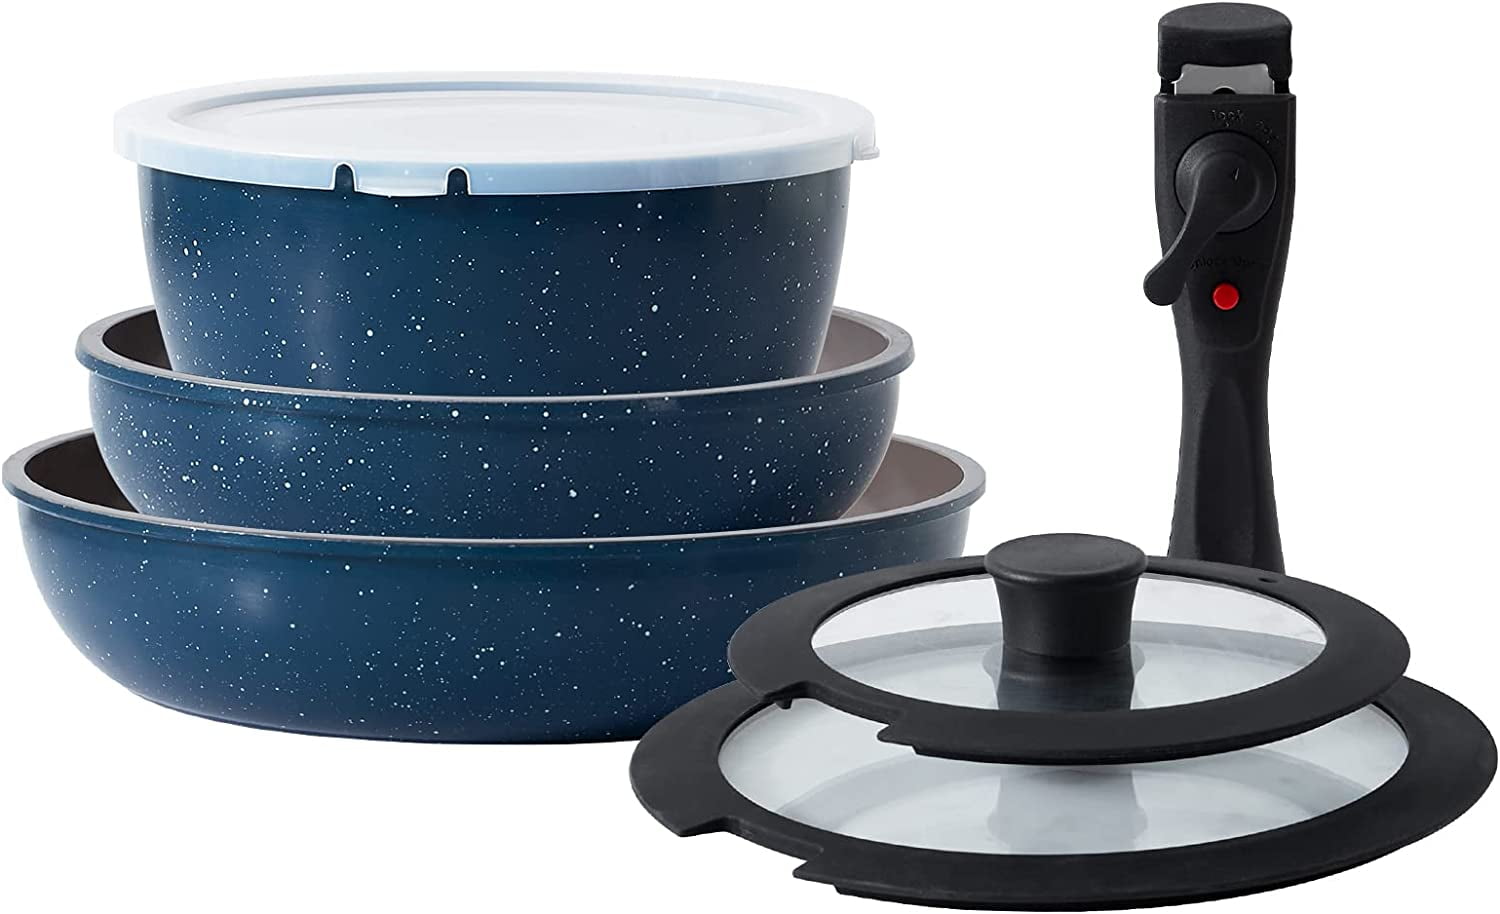 CAROTE Nonstick Cookware Sets, Non Stick Pots and Pans Set Detachable  Handle, Kitchen Cookware Sets with Removable Handle, Stackable RV Cookware  for